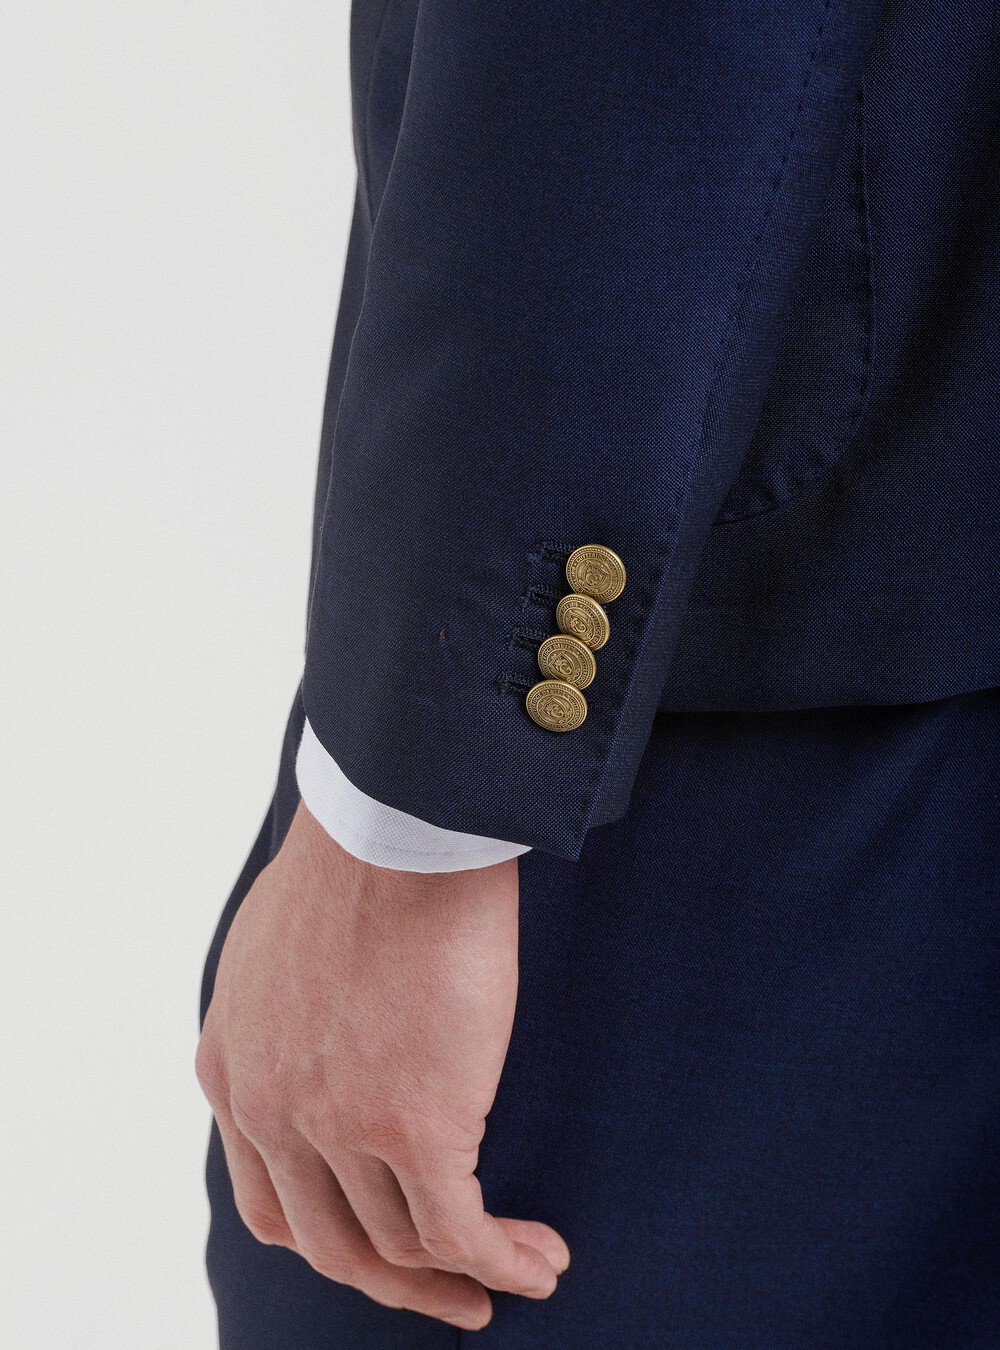 Giacca doppiopetto con bottoni metallo in pura lana Vitale Barberis  Canonico | Gutteridge | Giacche Uomo